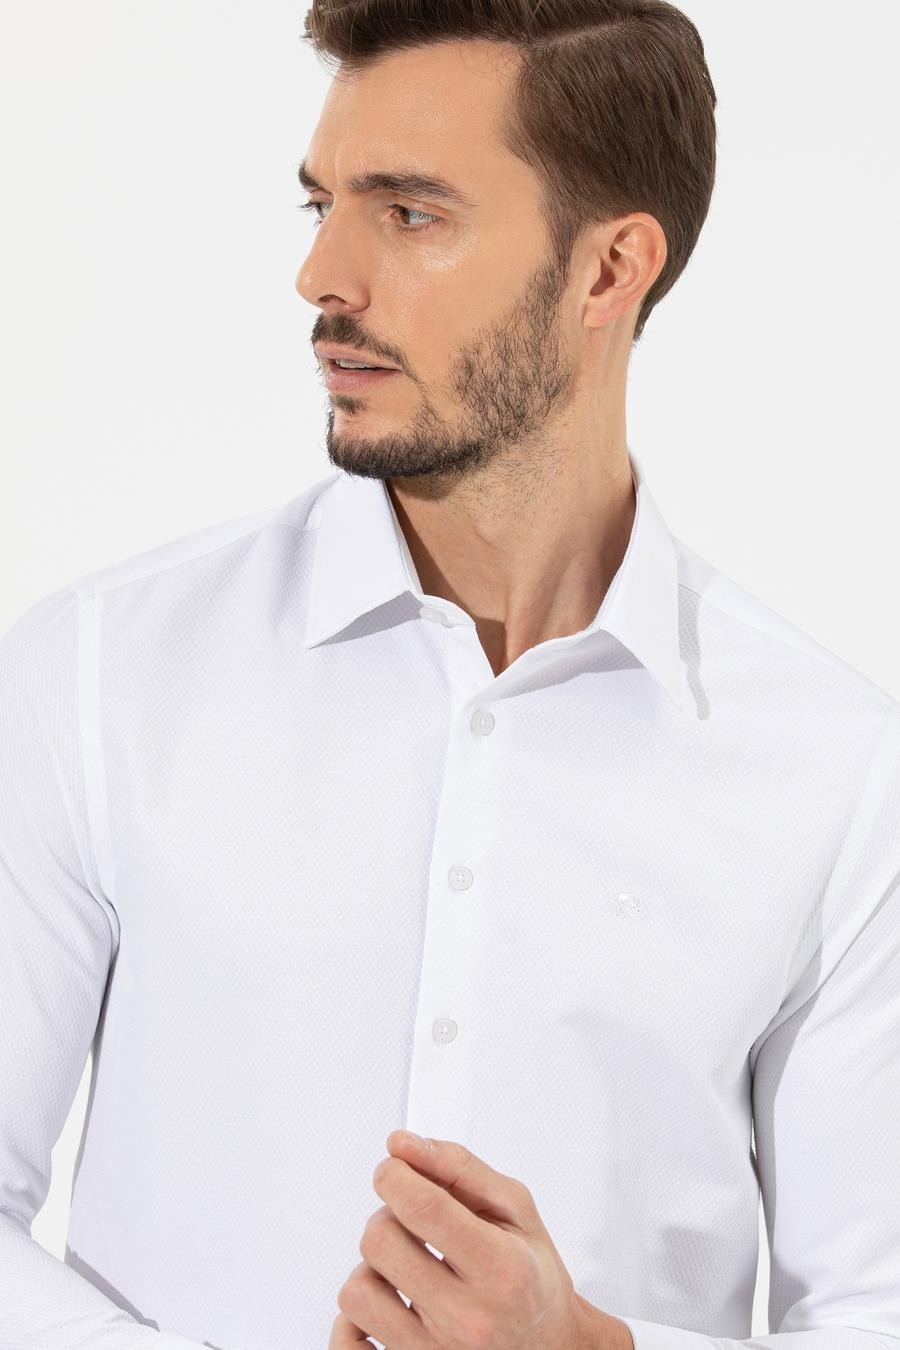 پیراهن  سفید  اندامی  مردانه  پیرکاردین